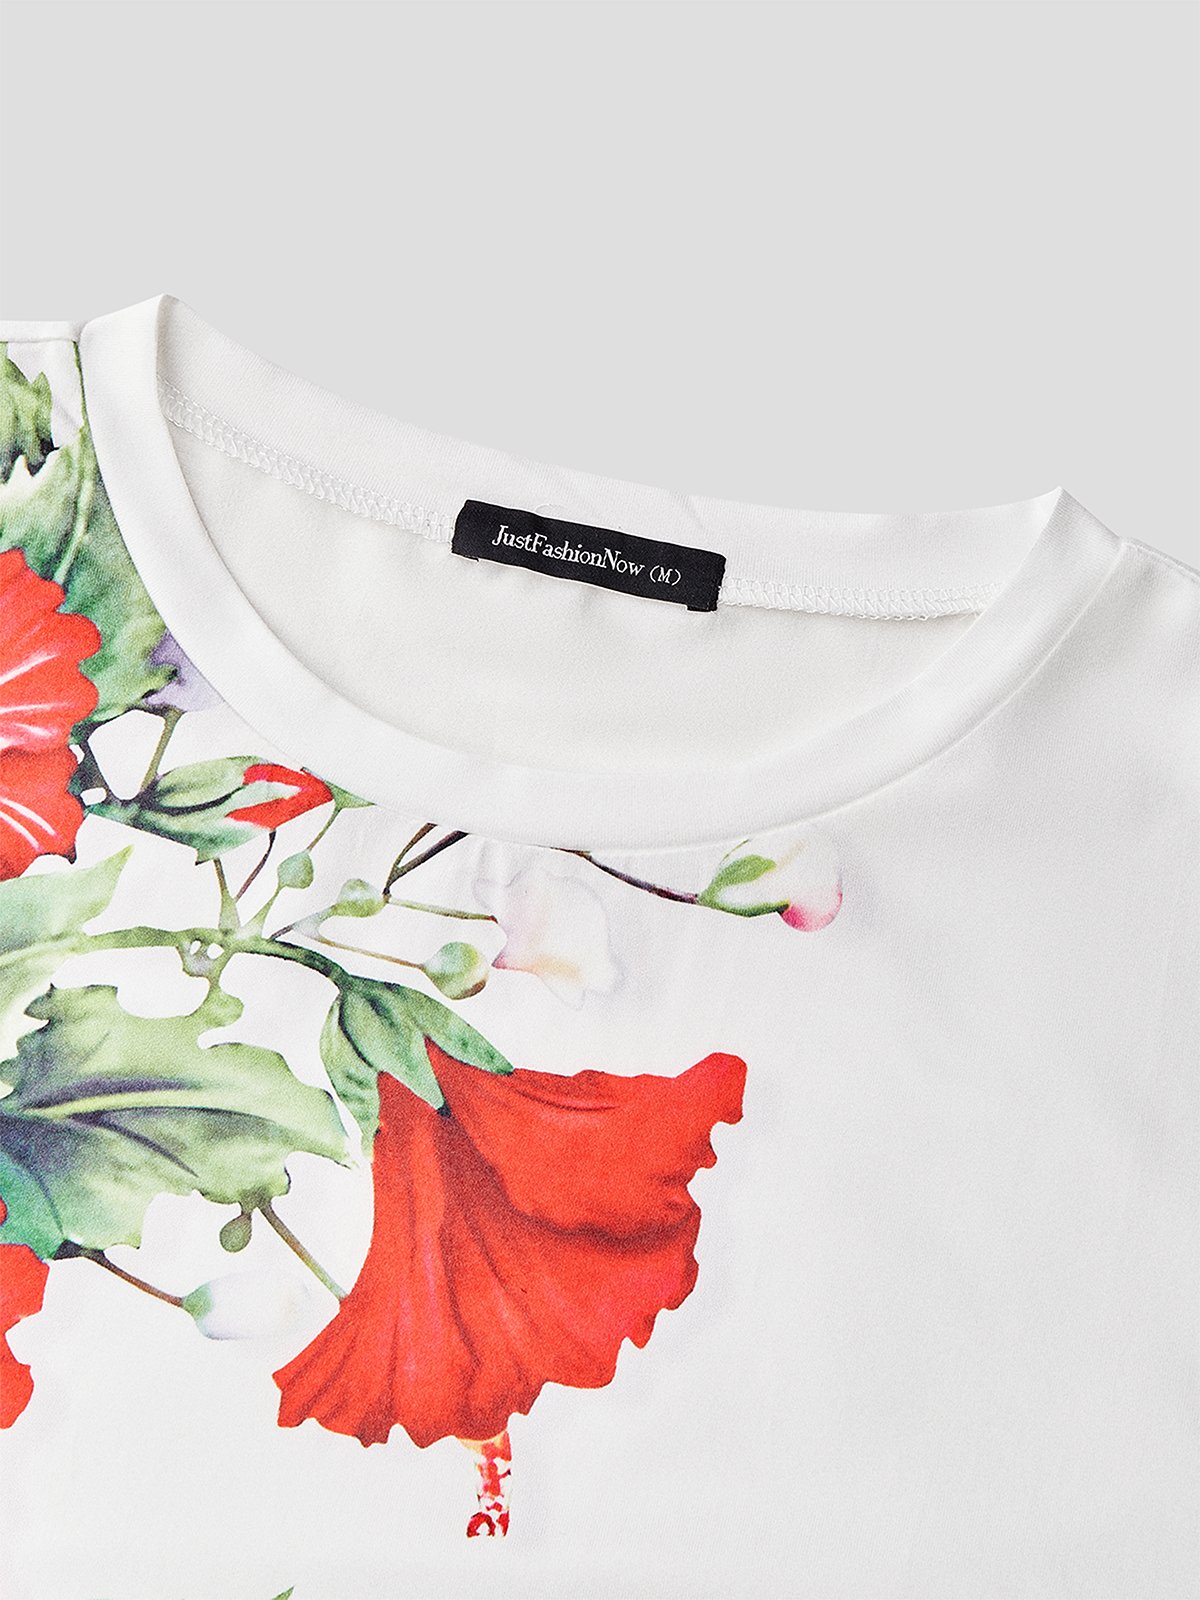 Verano Floral Diseño Casual Cuello Redondo Manga Corta Camiseta